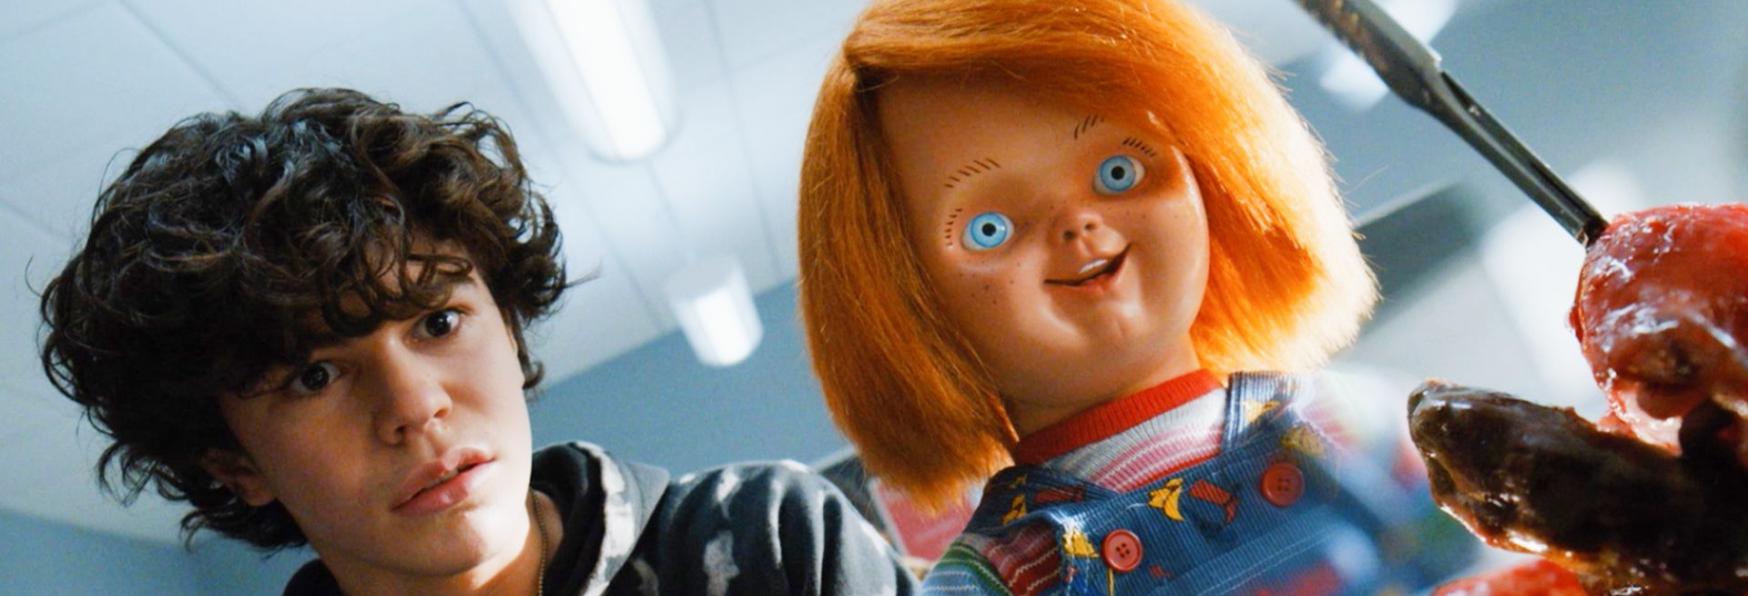 Chucky 2: Gina Gershon e Joe Pantoliano entrano a far parte del Cast della nuova Stagione